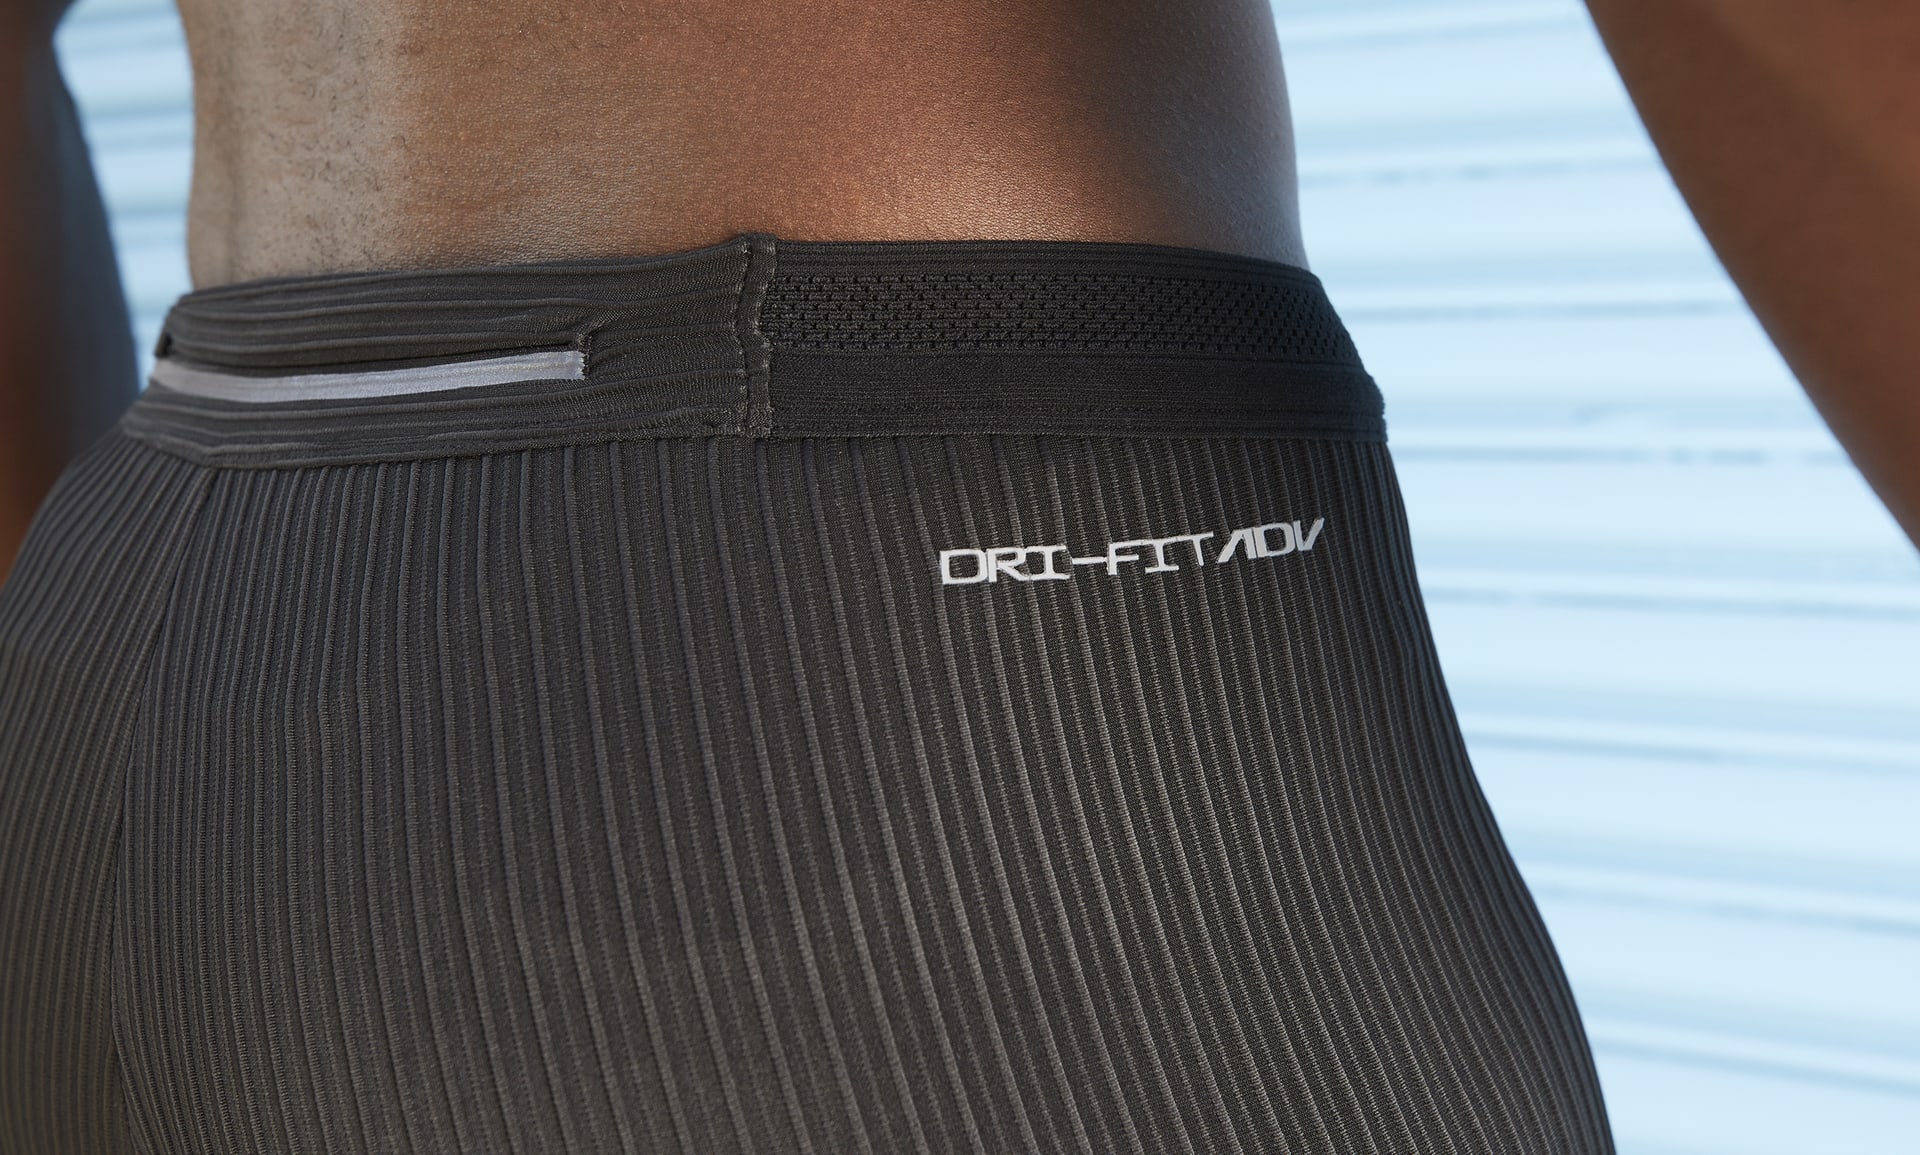 Nike Dri-FIT ADV AeroSwift Men's Racing Tights, Black/Hyper Pink/Light  Lemon, Large